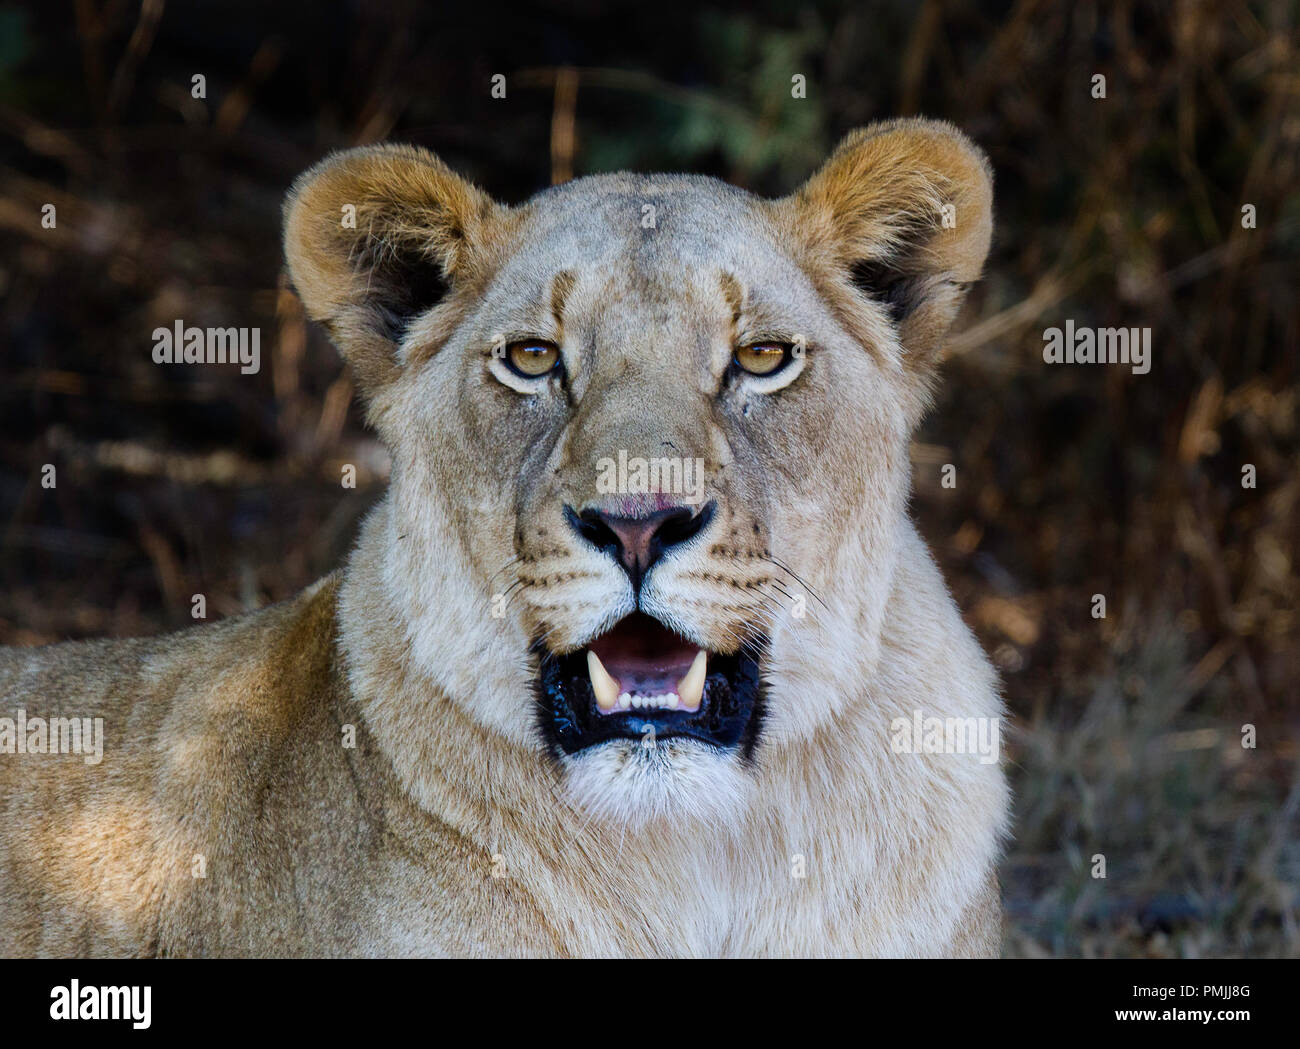 Ritratto di una leonessa che mostra le zanne. Fotografia scattata in Sud Africa Foto Stock